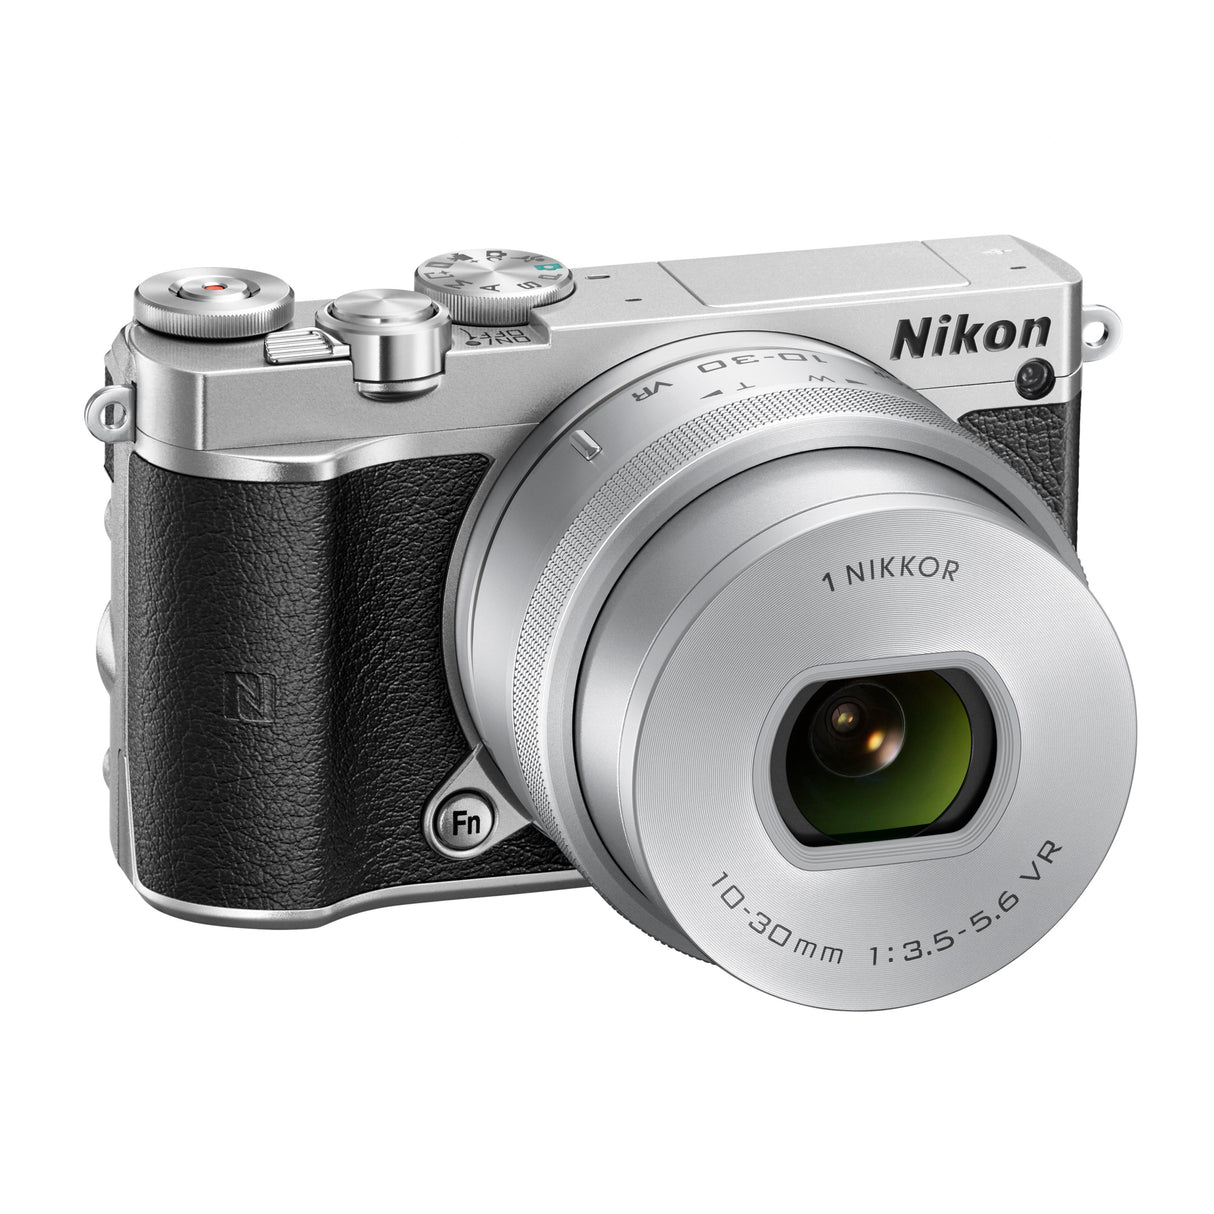 Nikon 1 J5 Point & Shoot Camera